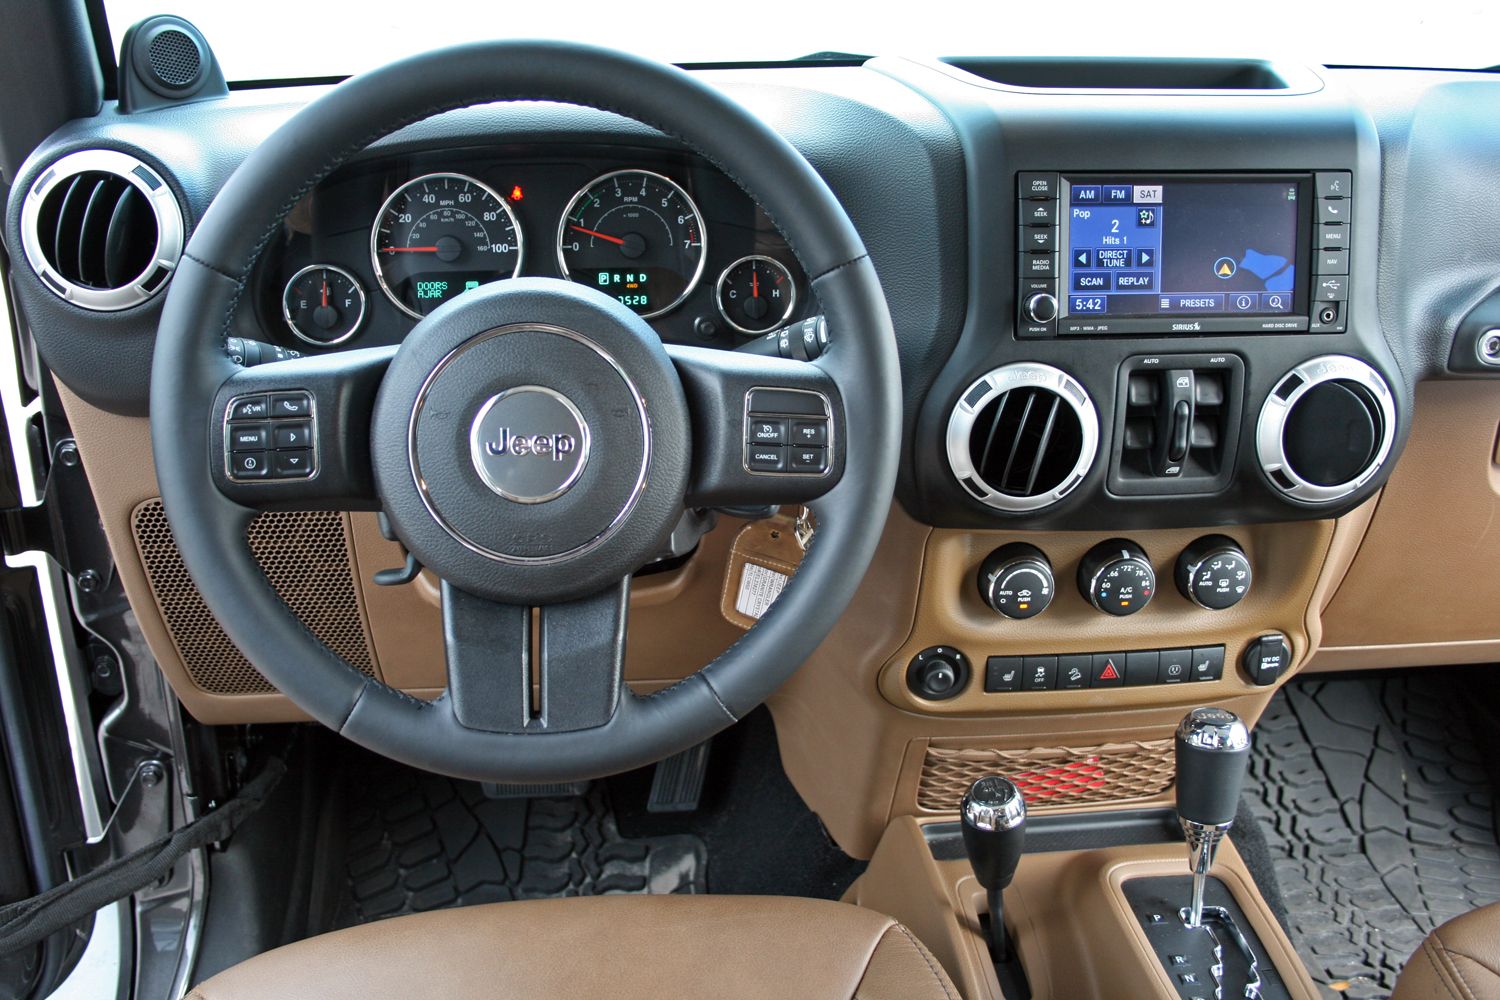 2014 Toyota 4Runner TRD Pro vs. Jeep Wrangler Unlimited